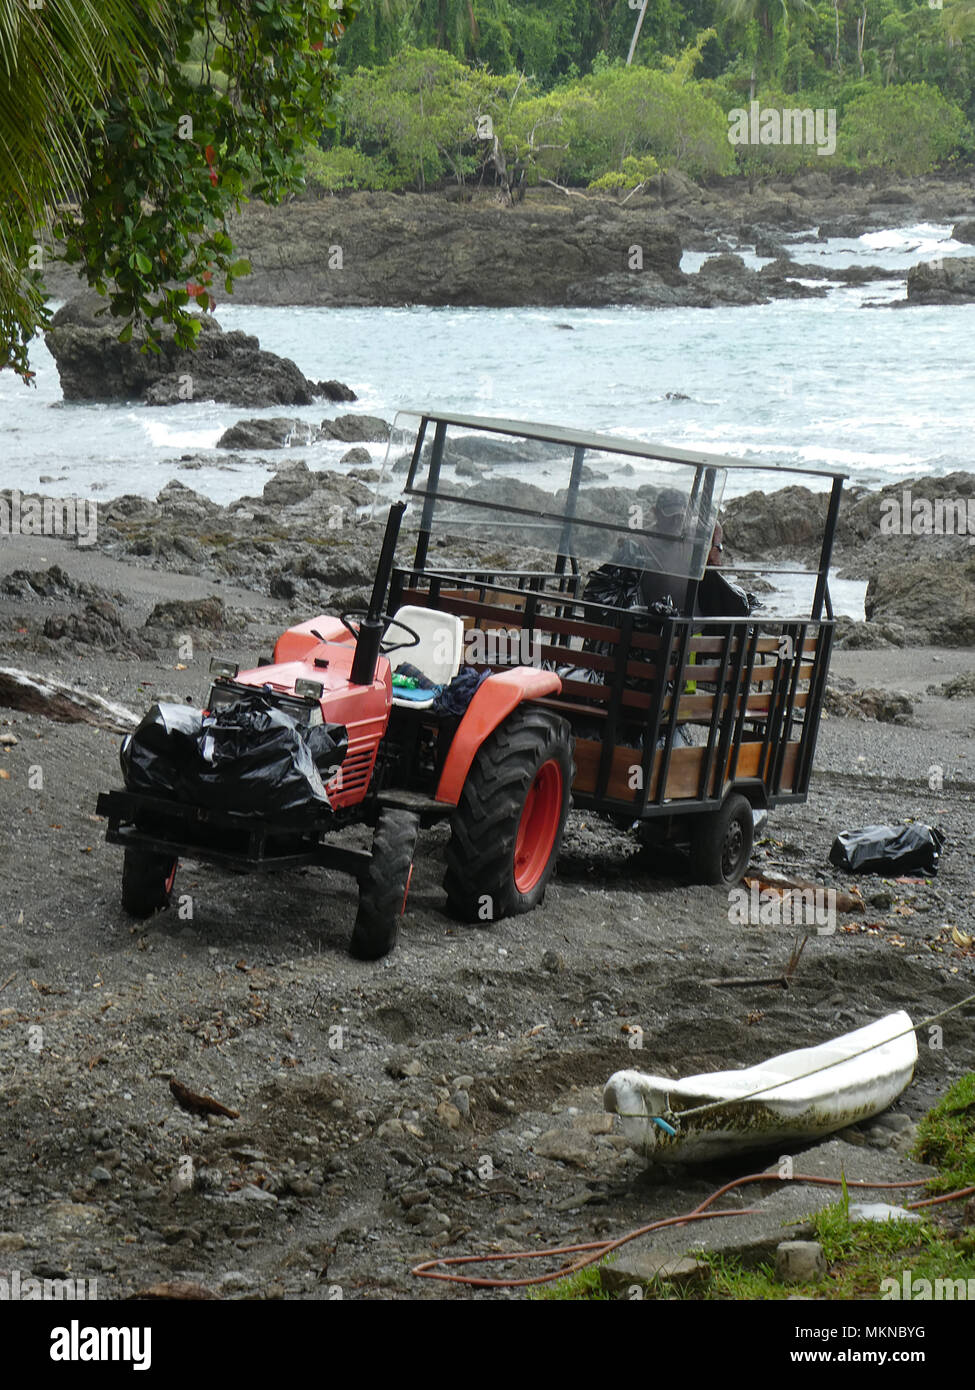 La prise du tracteur à l'hôtel des touristes après leur arrivée par la rivière, le Costa Rica en 2018. Banque D'Images